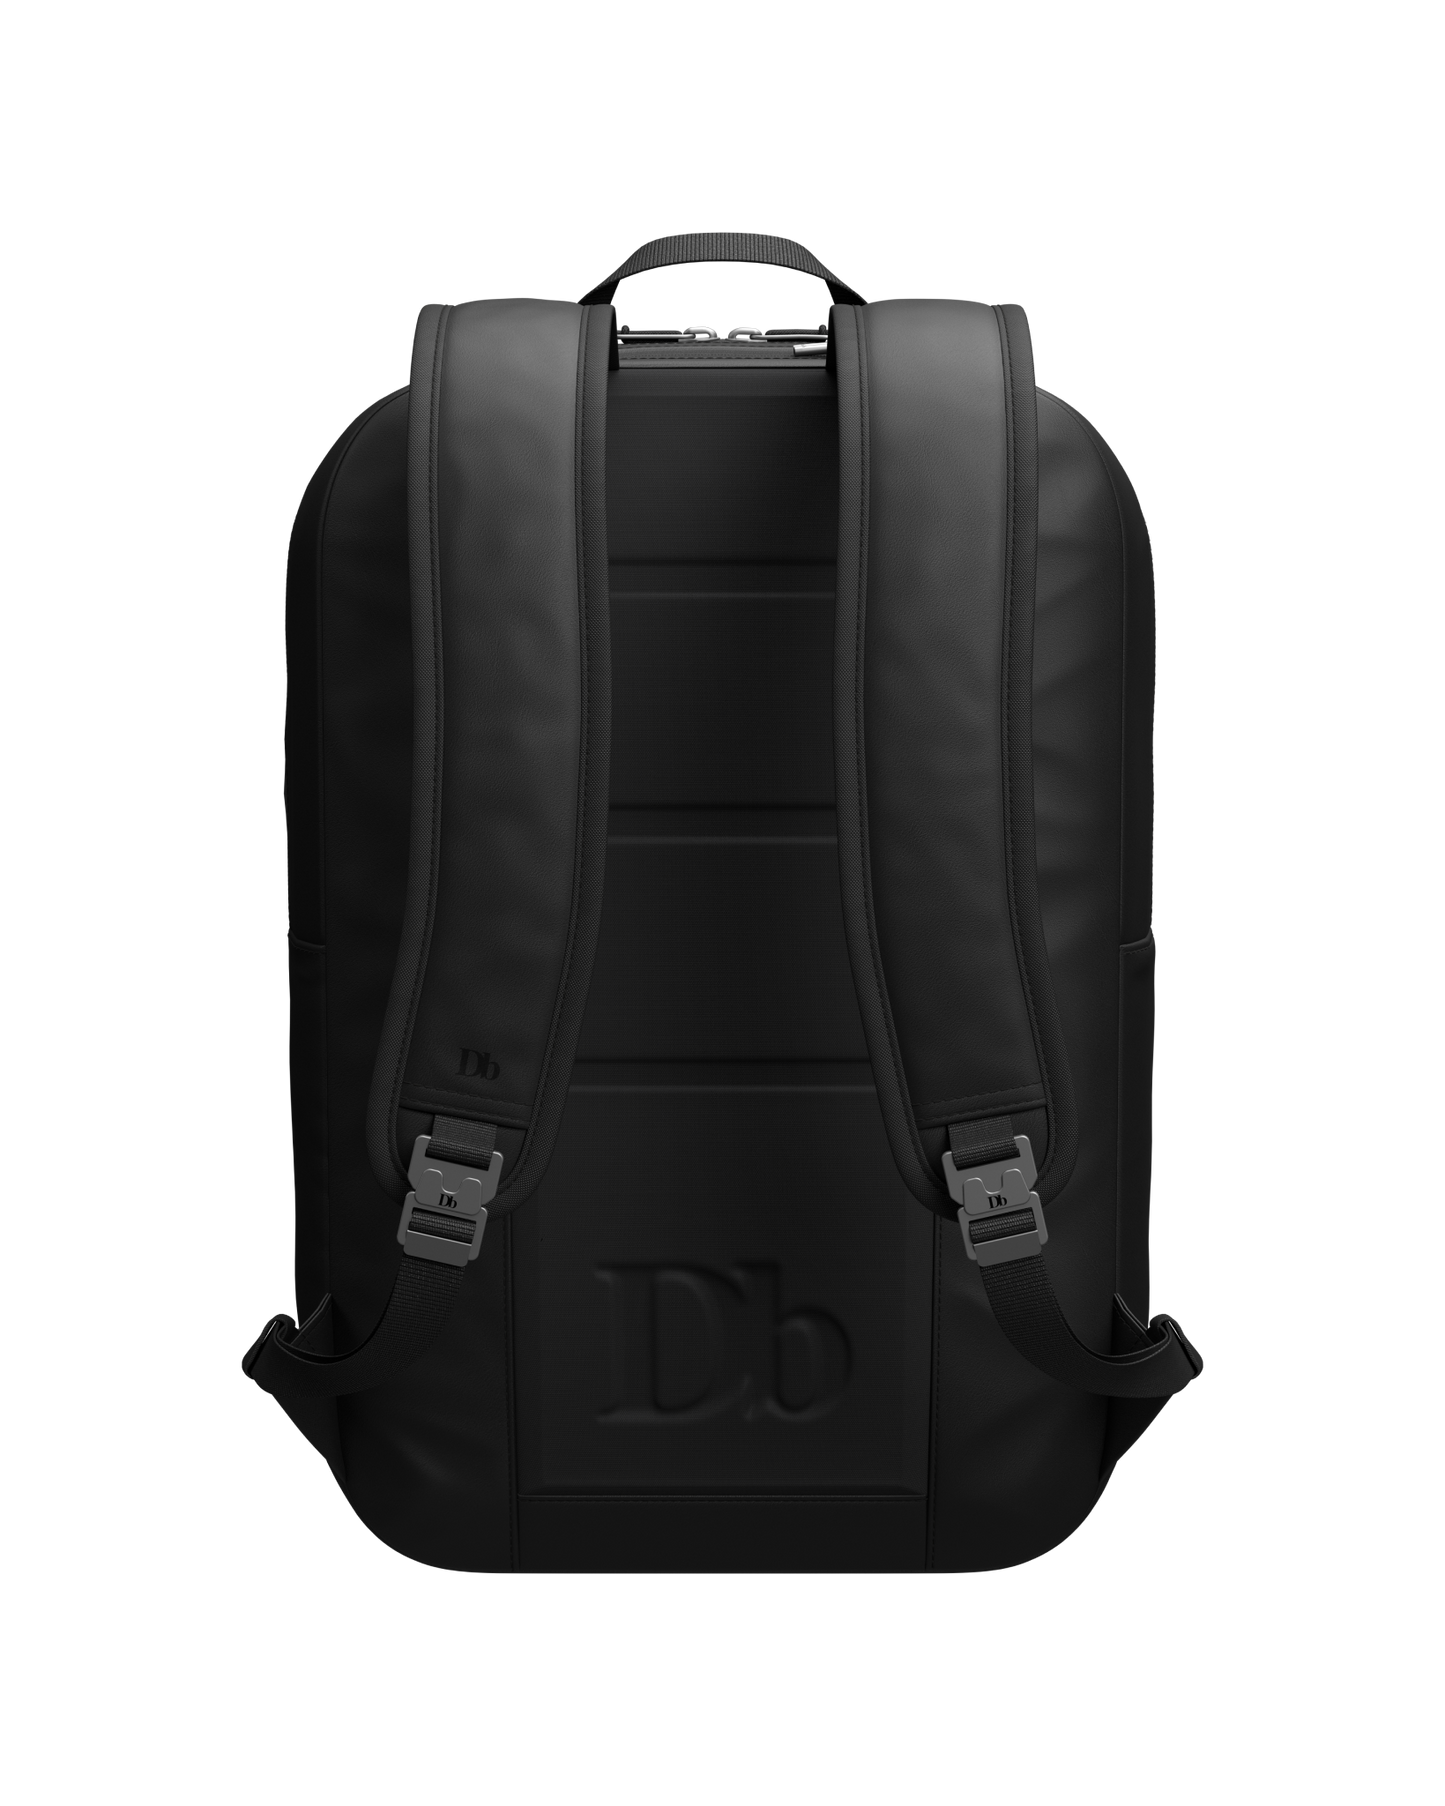 The Varrldsvan 17L Backpack